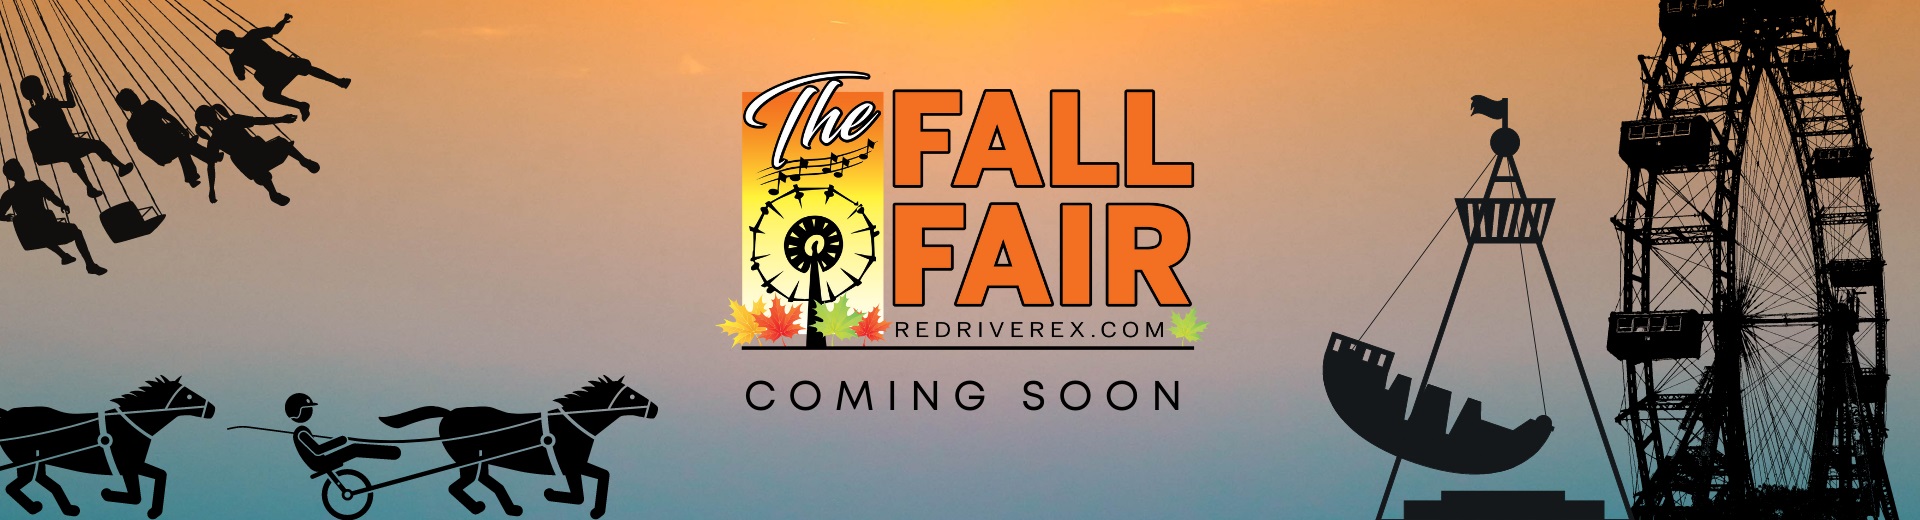 The Fall Fair